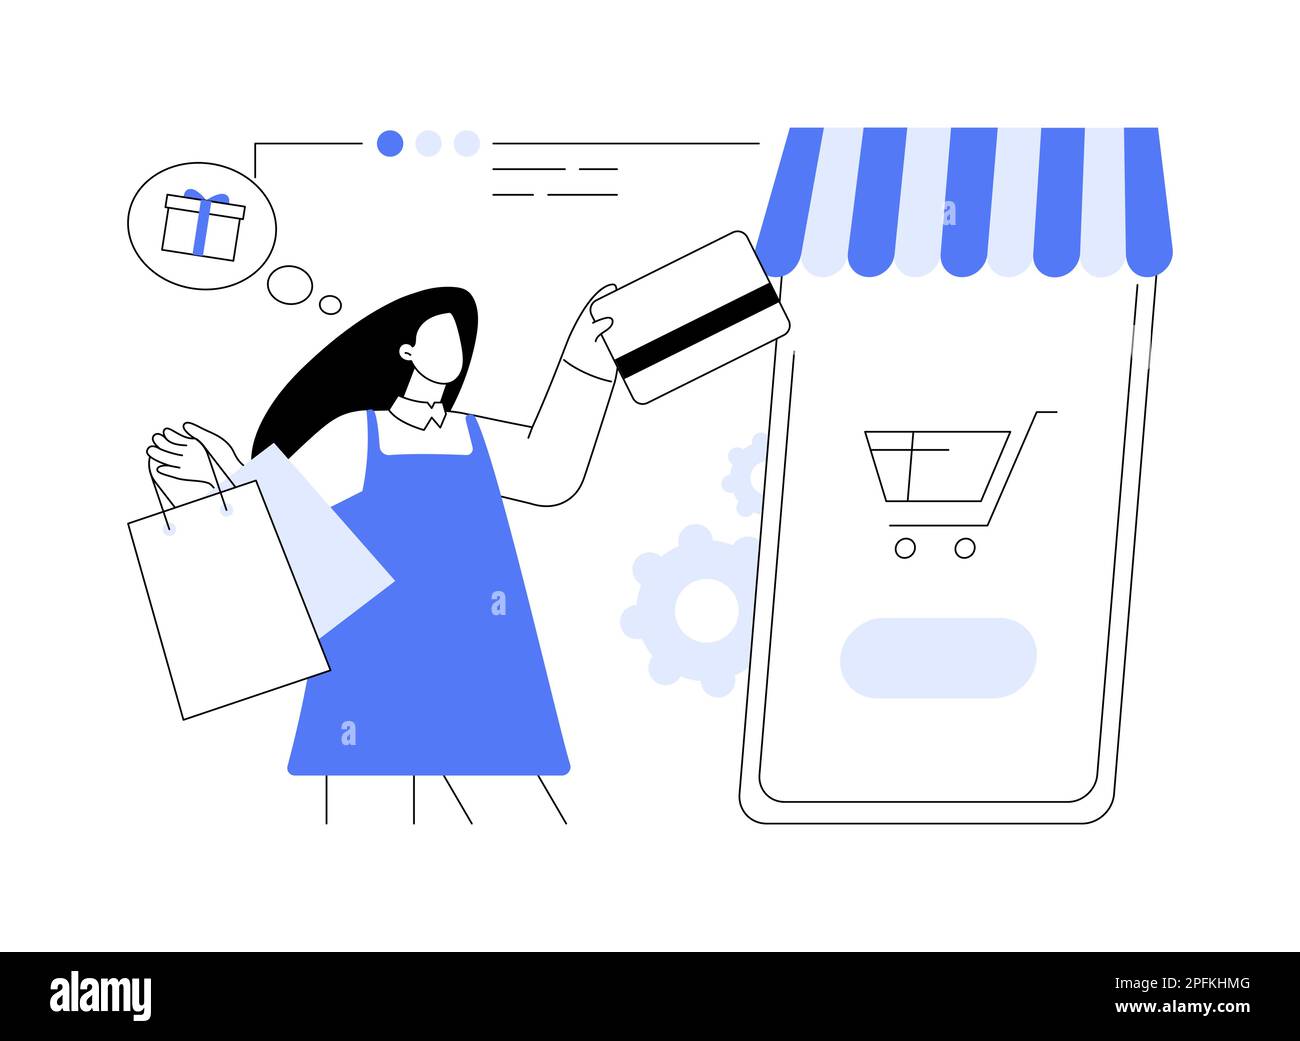 Online-Shopping abstrakt Konzept Vektor Illustration. E-Commerce-Plattform, Online-Shopping-Website, Internet-Shop, mobile Anwendung, digitale Produkte Stock Vektor